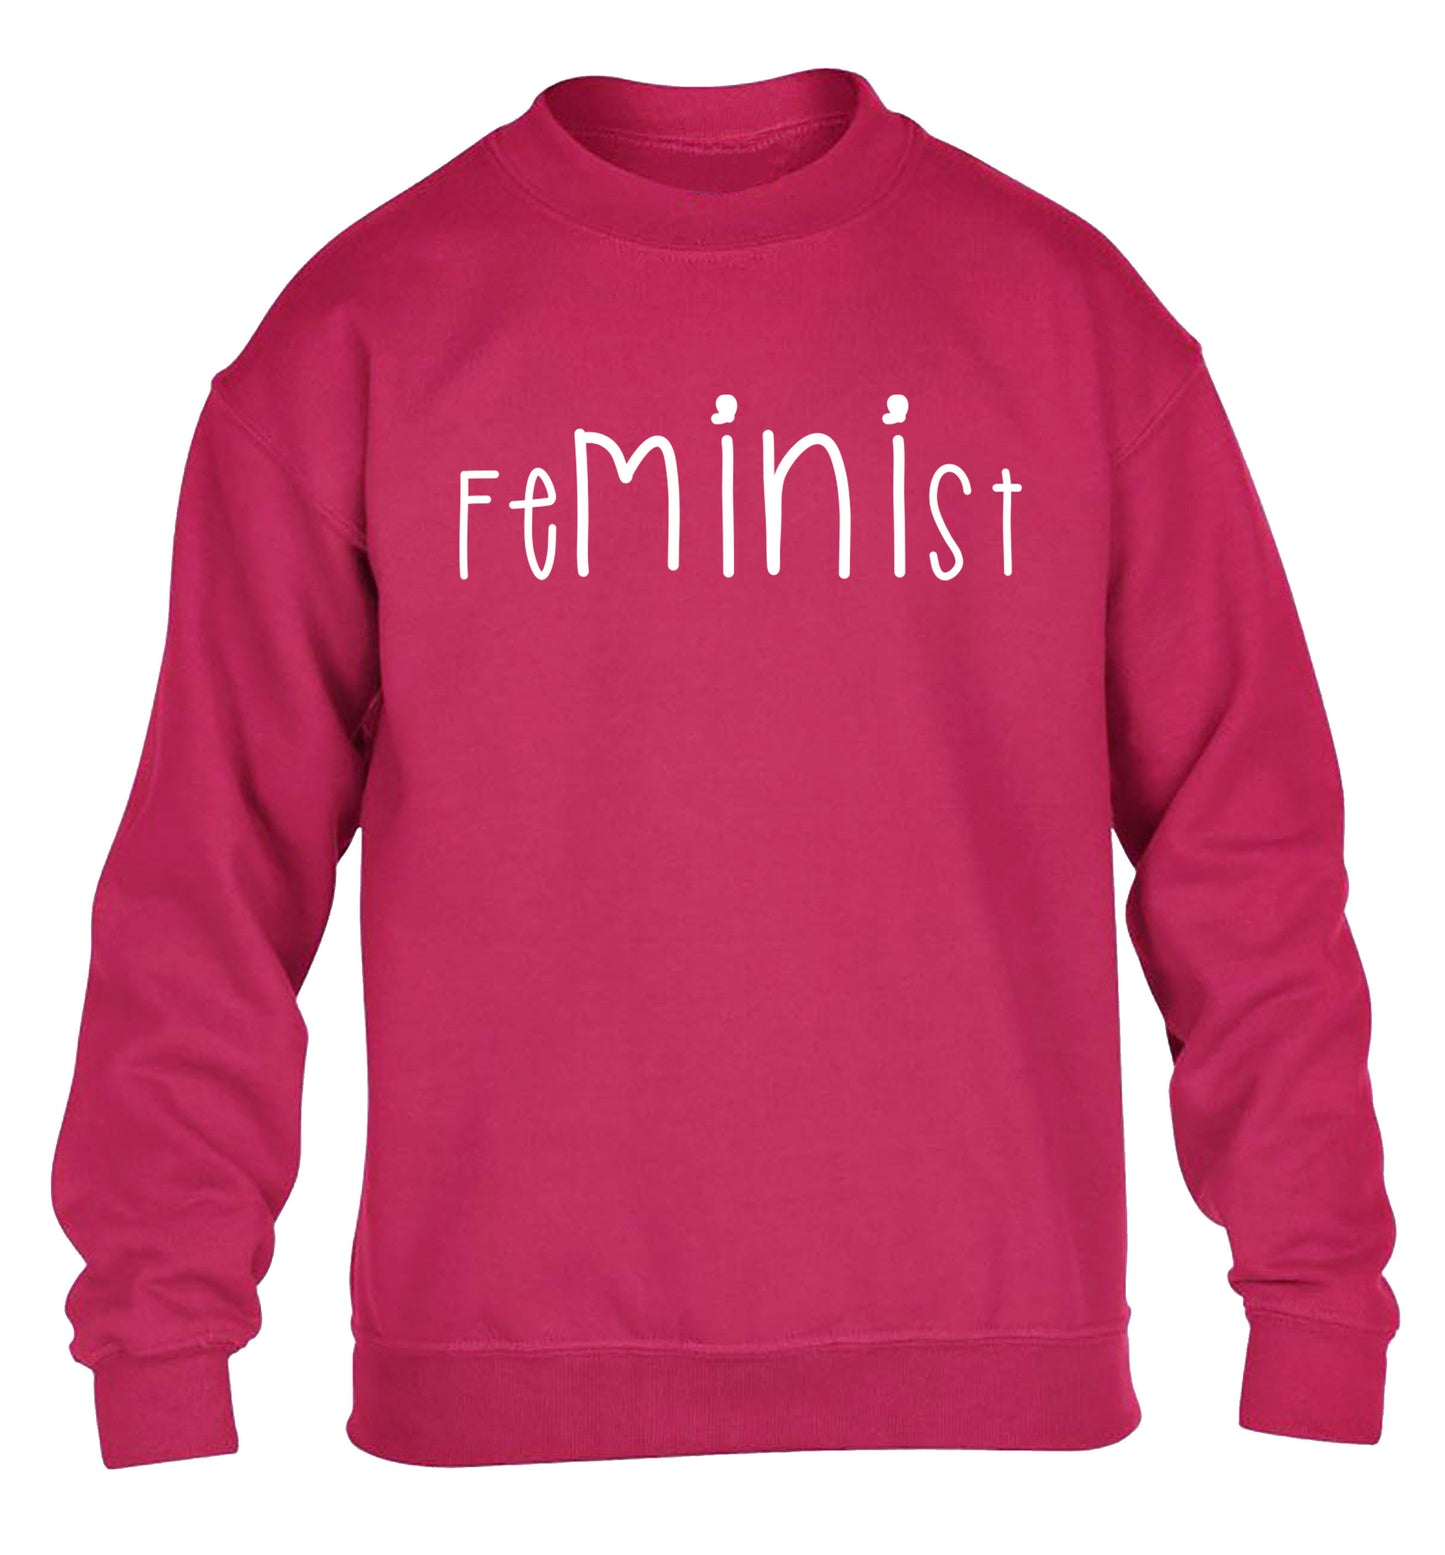 FeMINIst children's pink sweater 12-14 Years